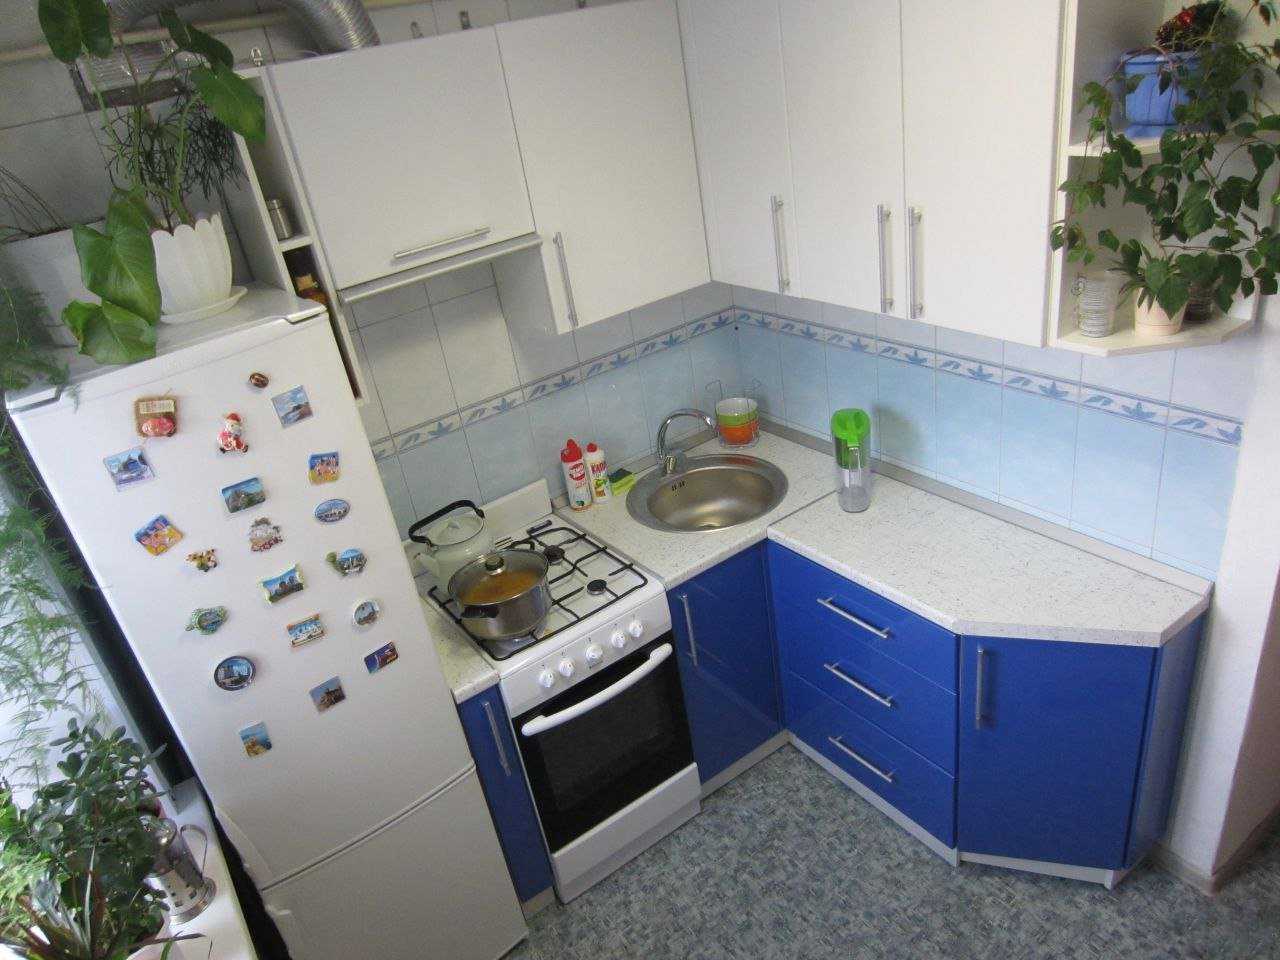 Дизайн Угловой Кухни 6 Кв М С Холодильником